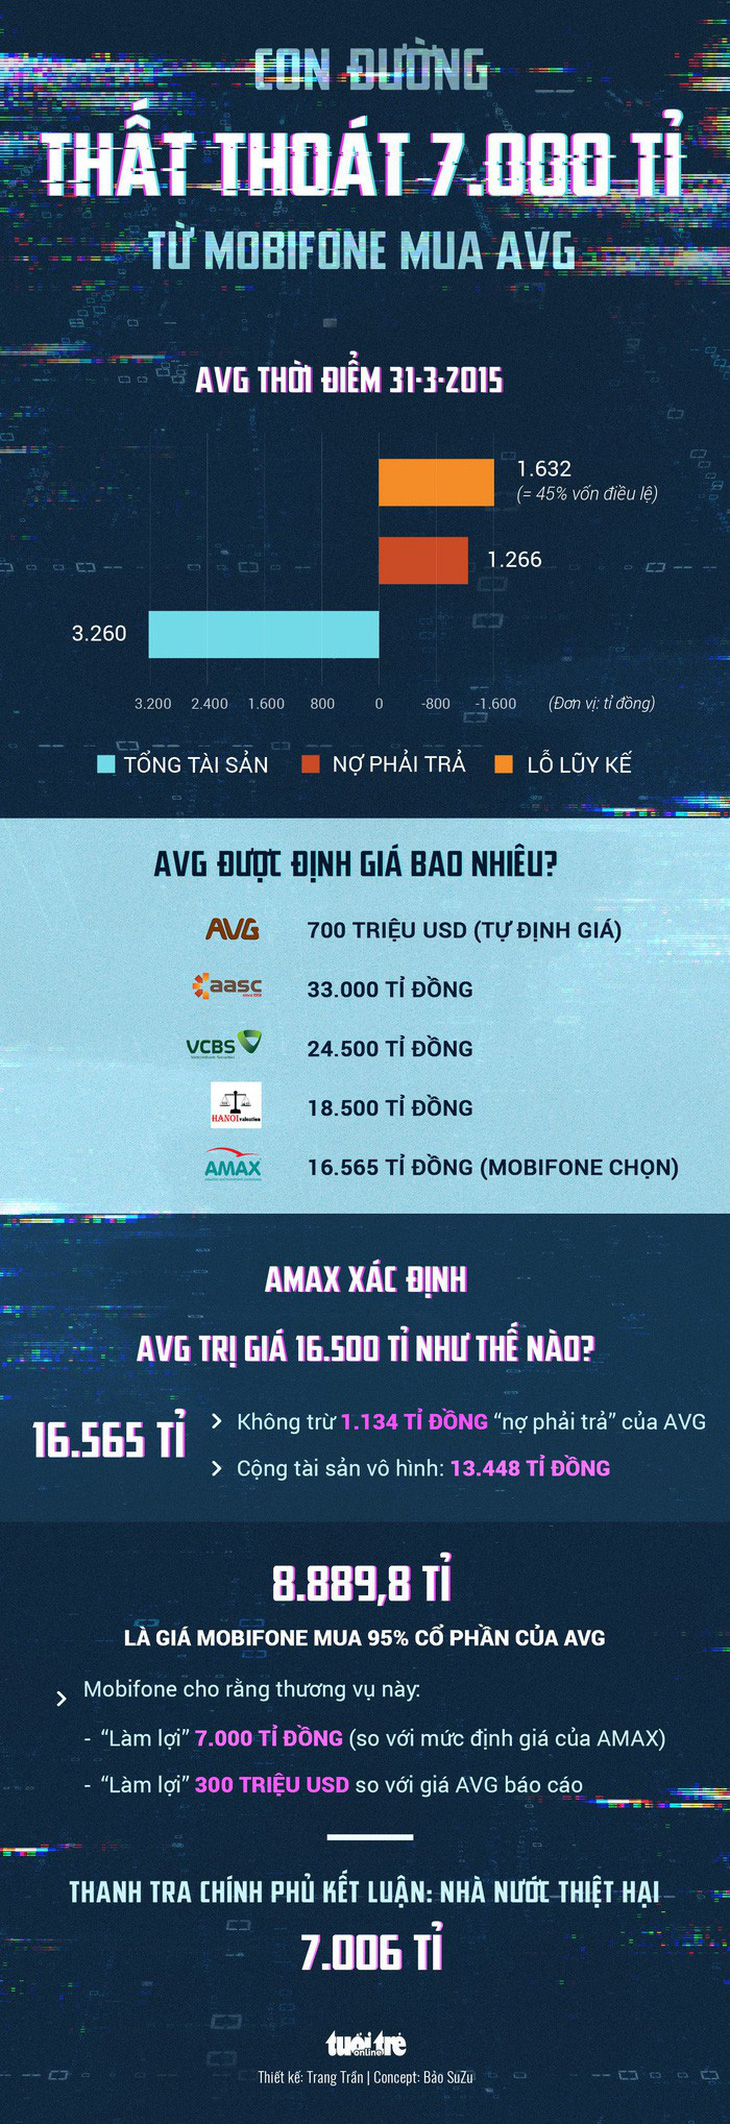 Các cổ đông AVG đã trả 4.533 tỉ đồng cho MobiFone - Ảnh 2.